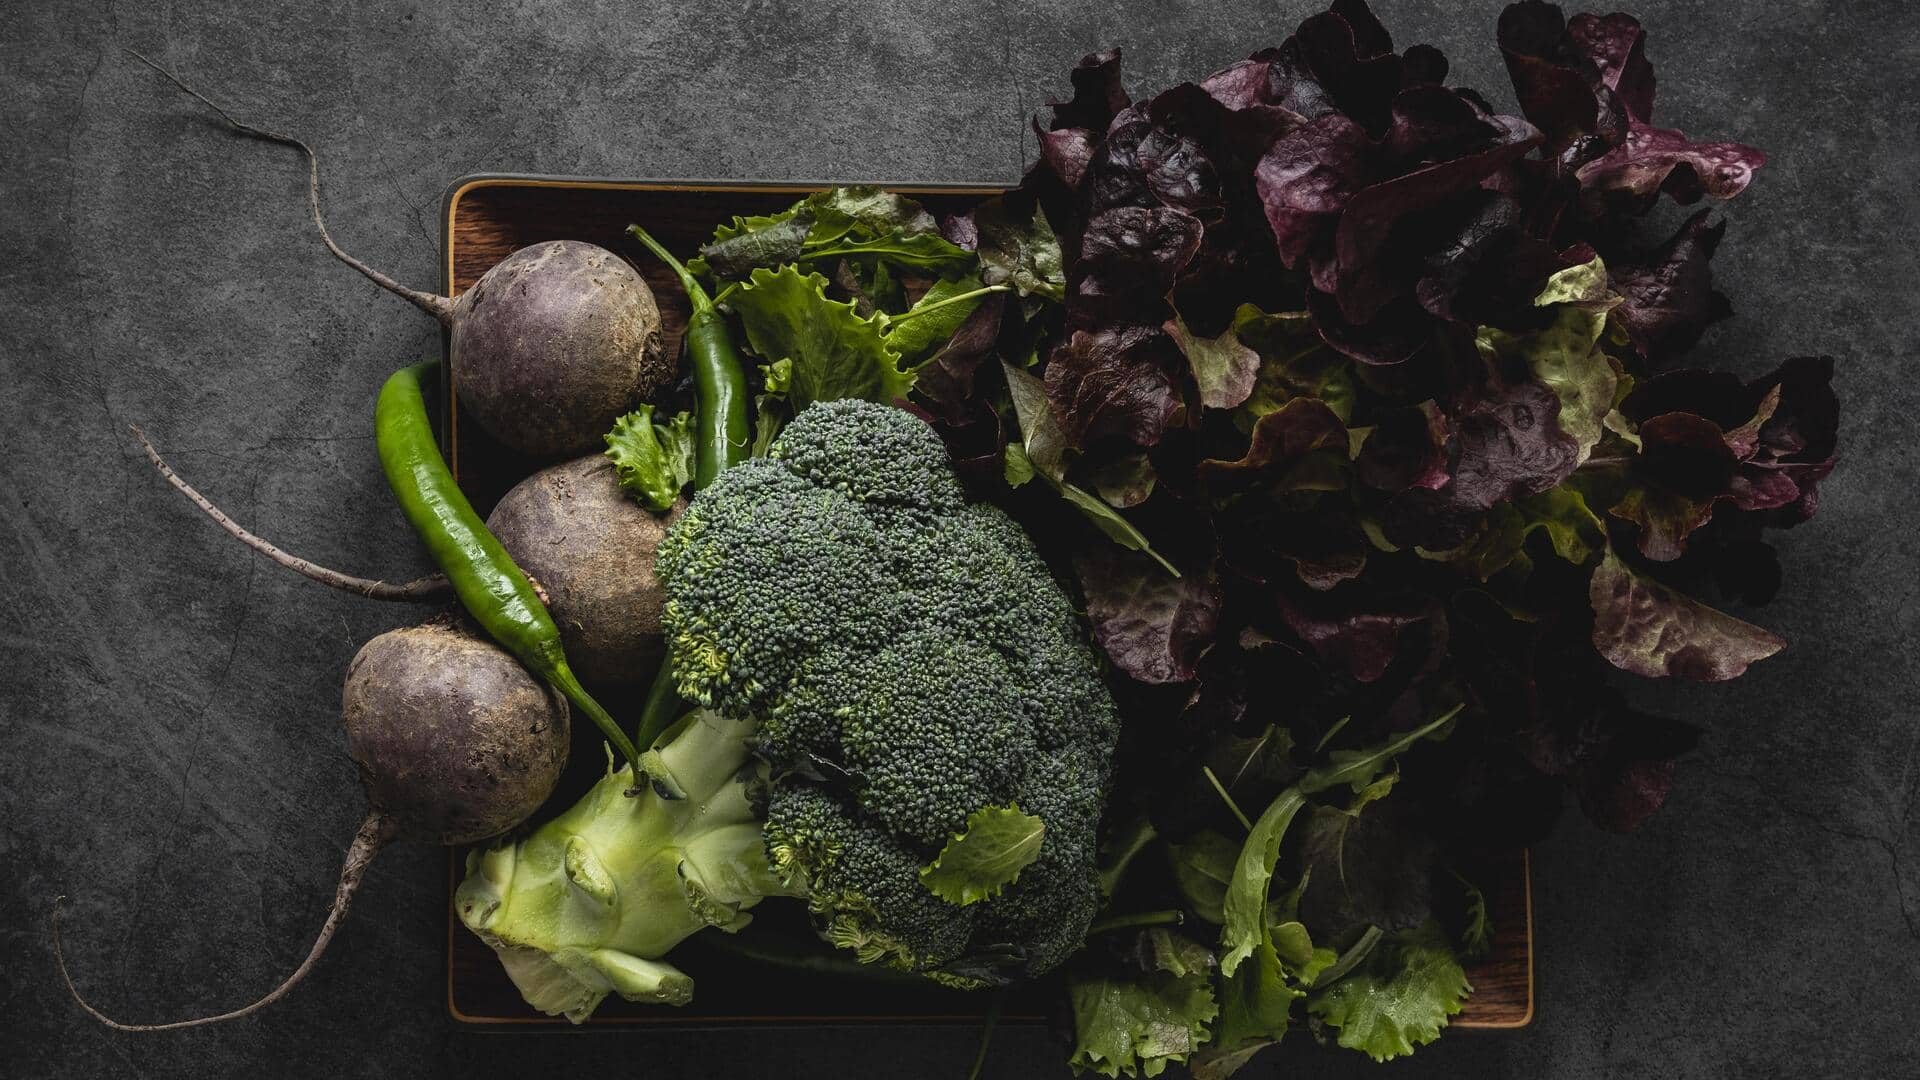 सर्दियों में आने वाली इन 5 सब्जियों का जरूर करें सेवन, प्रतिरक्षा प्रणाली होगी मजबूत